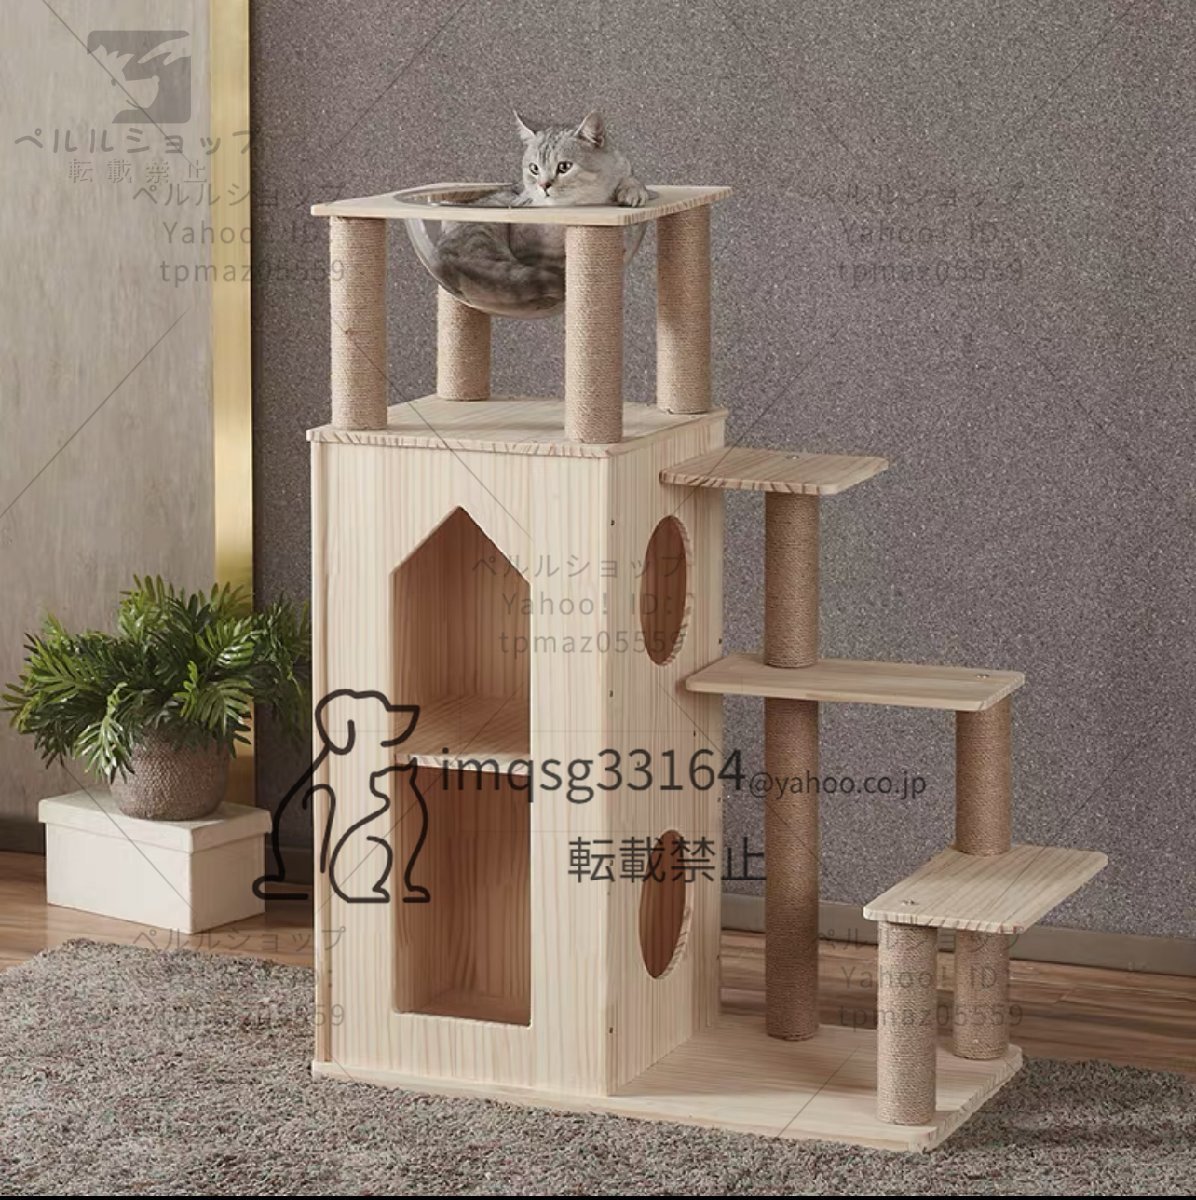 あなたにおすすめの商品 キャットタワー 多頭飼い 運動不足解消 宇宙船 木製 猫タワー 透明ハンモック 猫ハウス二つ 頑丈耐久 お手入れ簡単 キャットタワー